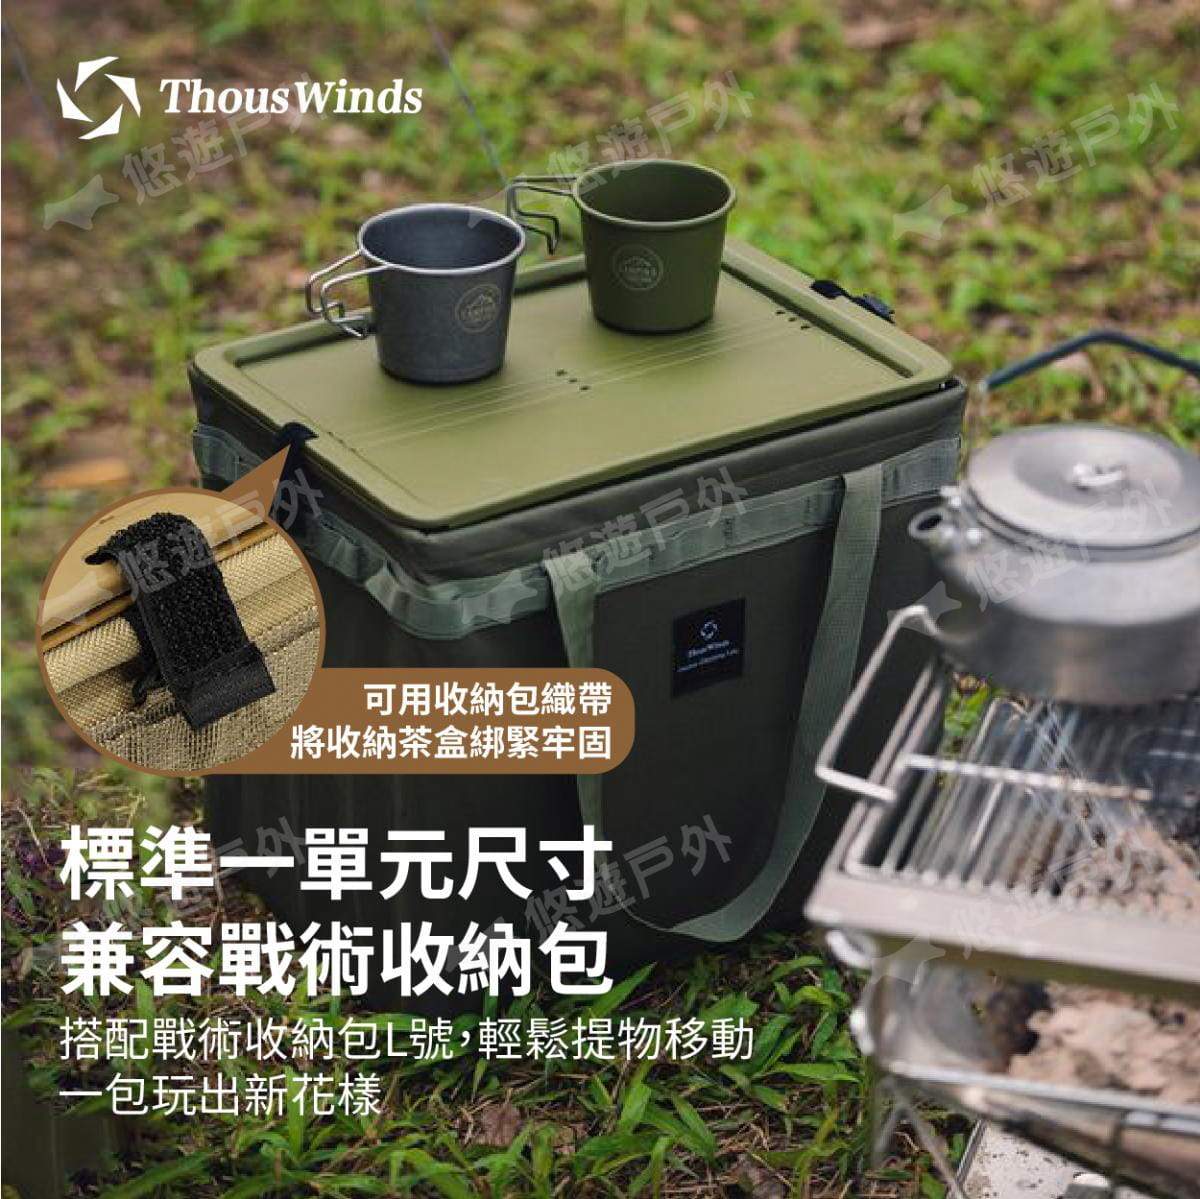 【Thous Winds】 一單元收納茶盒 三色 TW-IGT09B/G/K 悠遊戶外 4